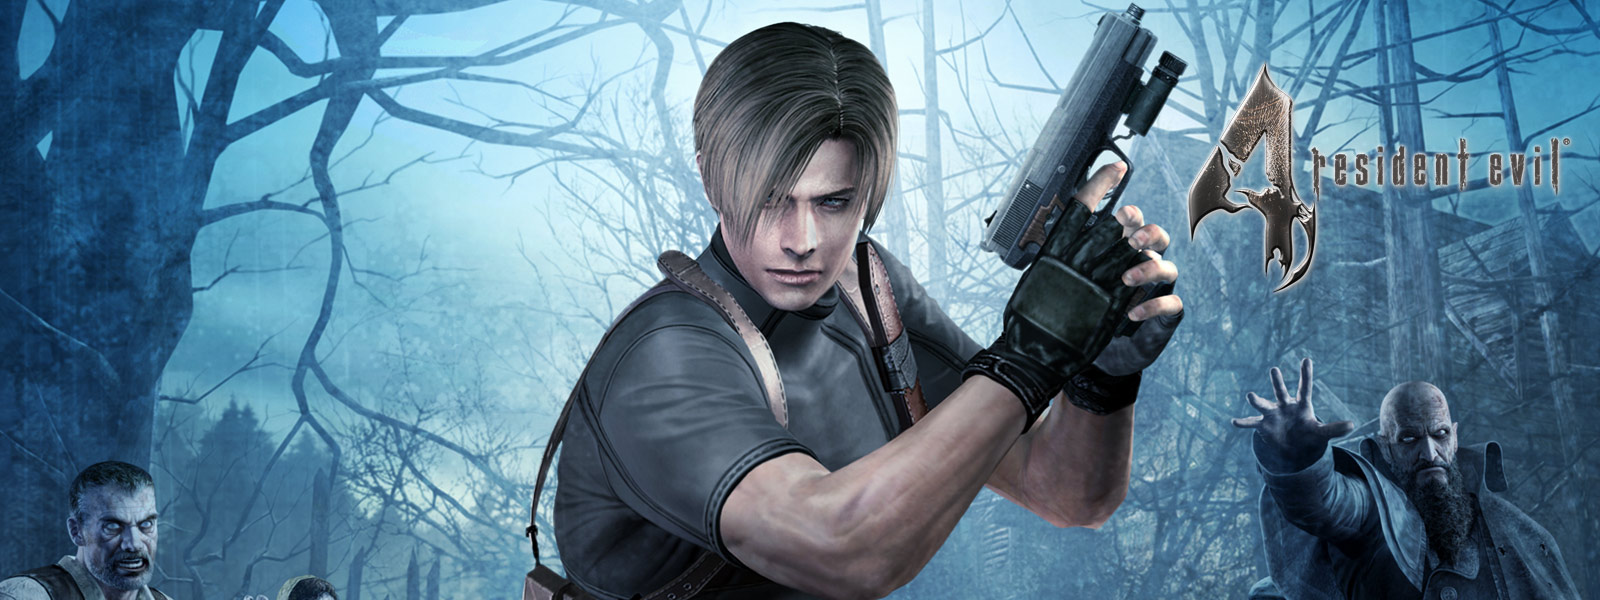 Resident Evil 4, karakter med pistol i en mørk skov omringet af zombier